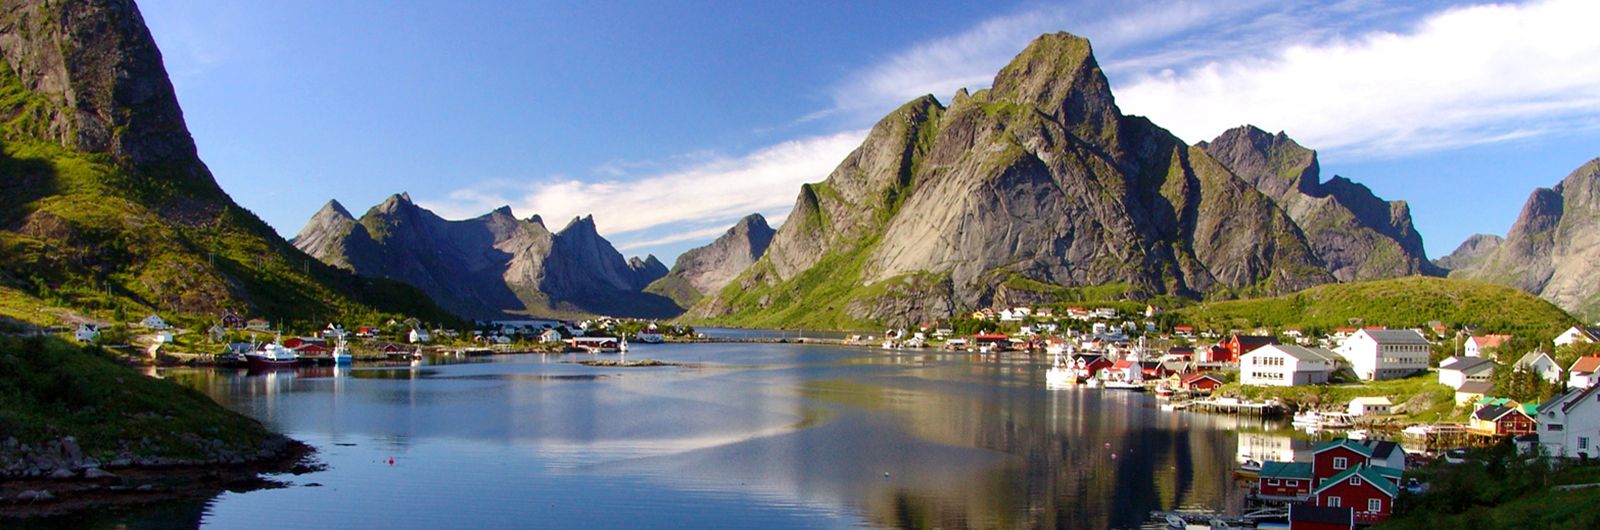 Noruega sur, Fiordos al completo aventura y confort